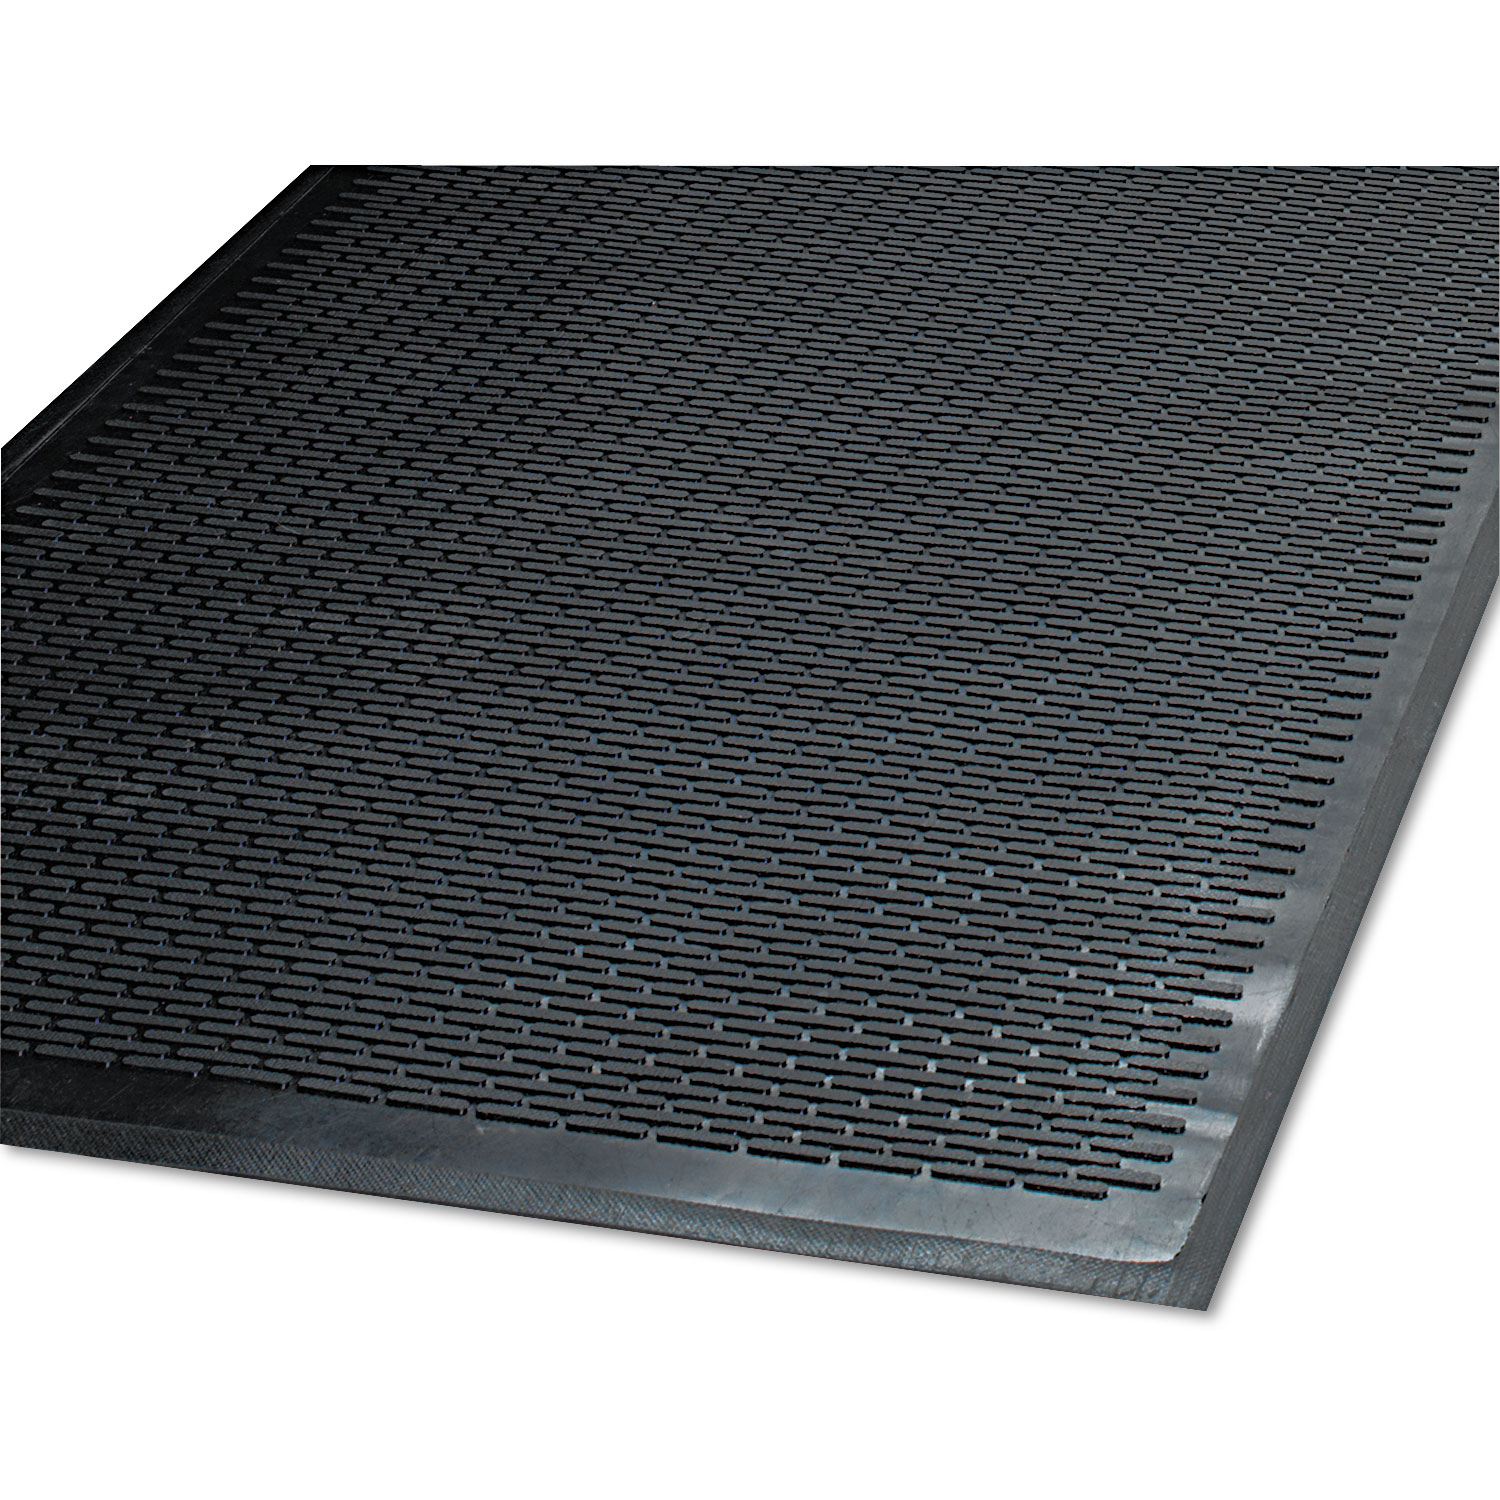  Guardian 14040600 Clean Step Outdoor Rubber Scraper Mat, Polypropylene, 48 x 72, Black (MLL14040600) 